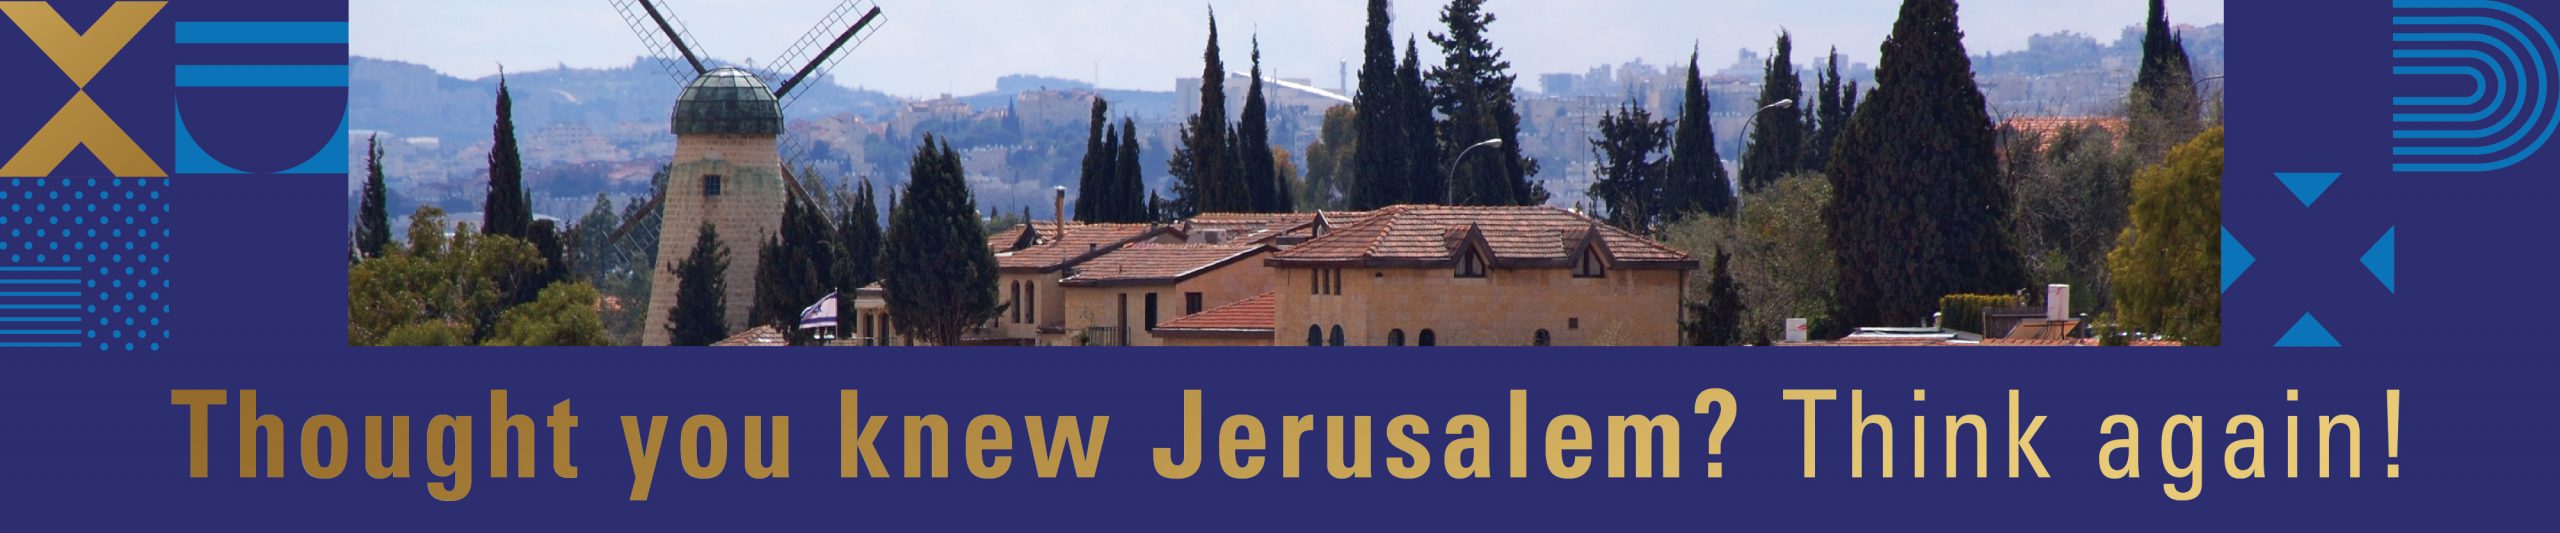 “Conflict, Collaboration, and Jerusalem’s Civic Renaissance”